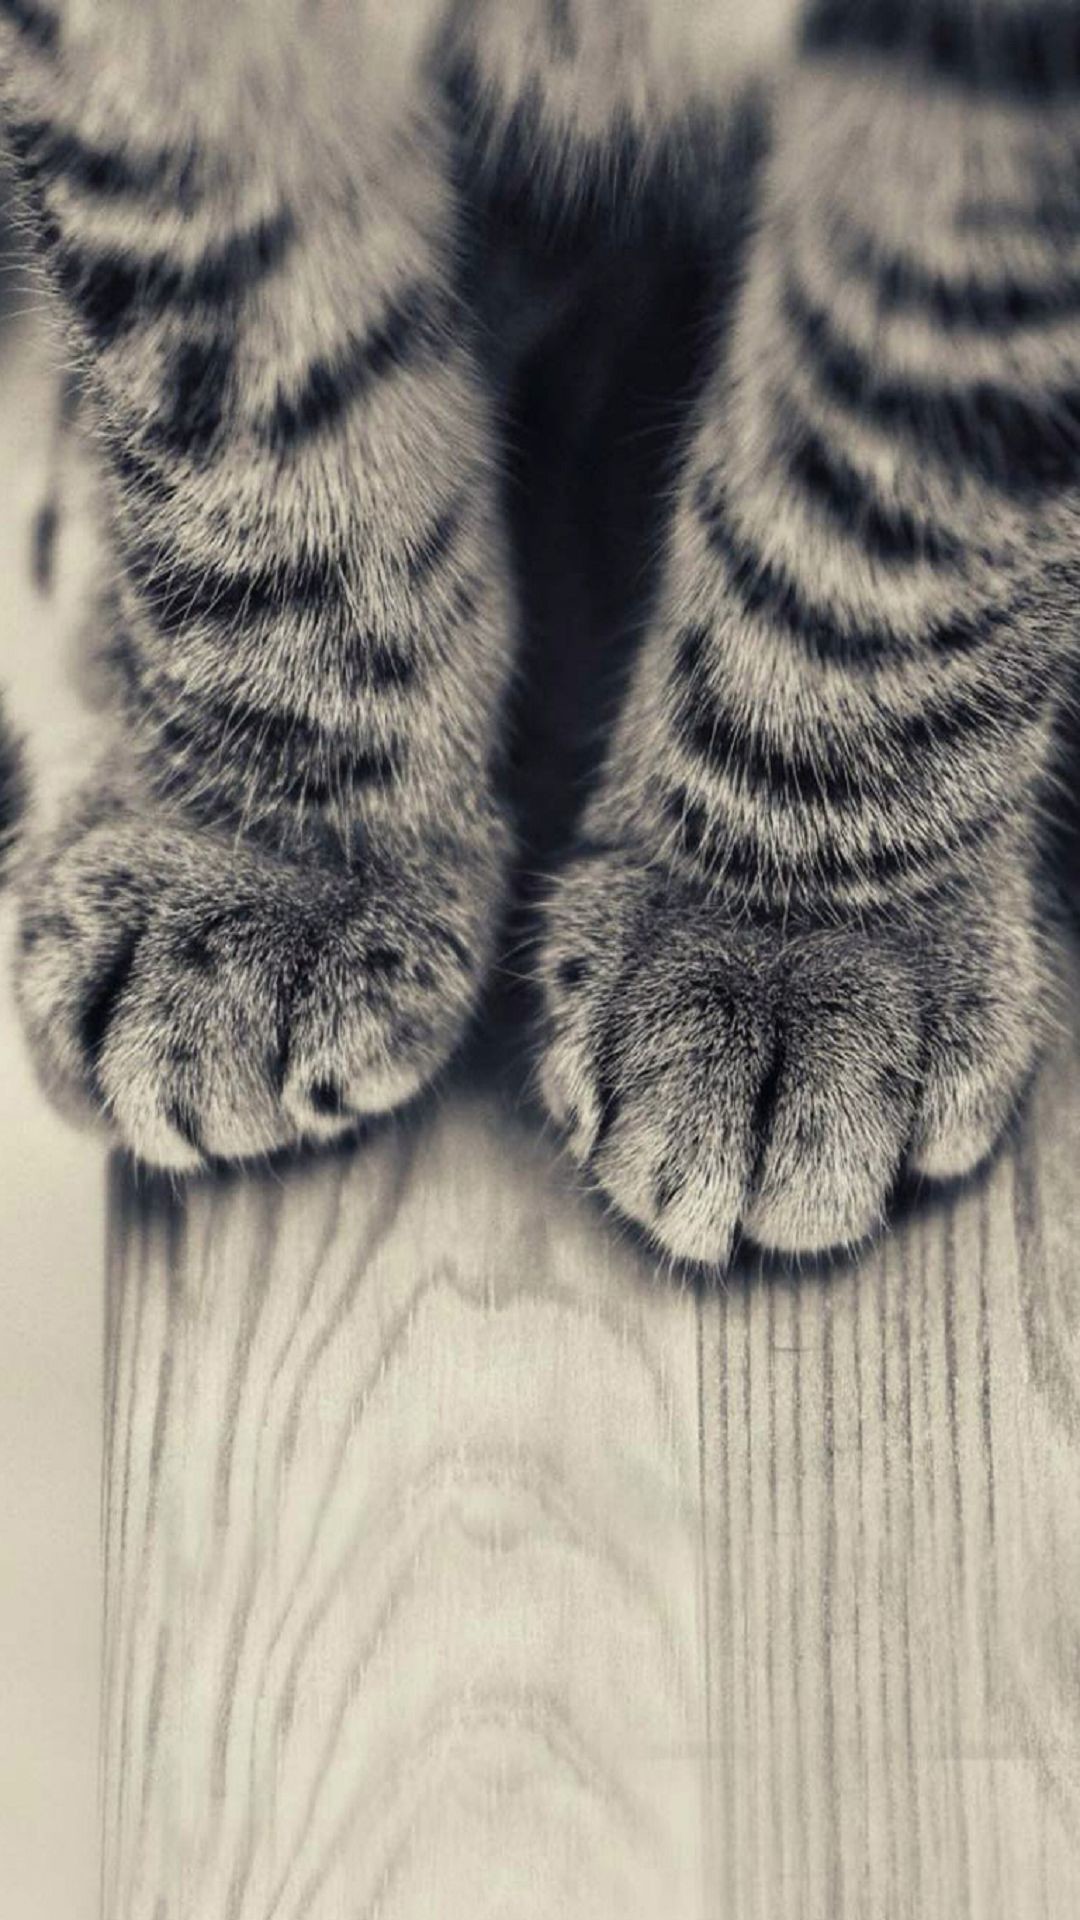 Striped-Kitten-Legs-Wooden-Floor-iPhone-6-Plus-HD-Wallpaper.